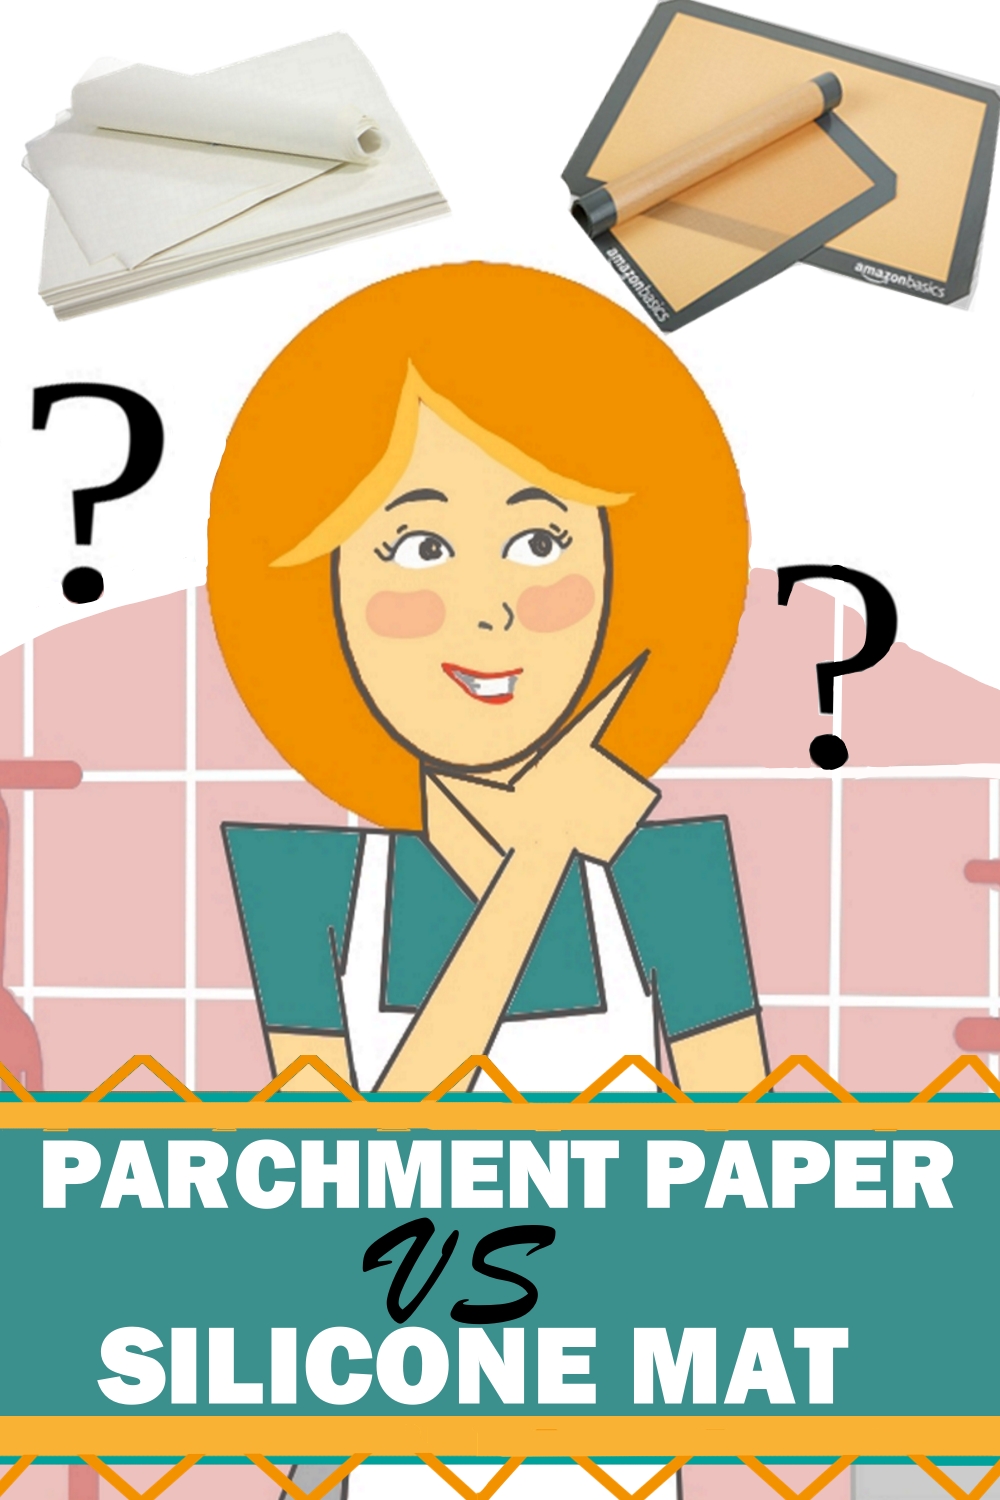 Parchment paper vs silicone mat